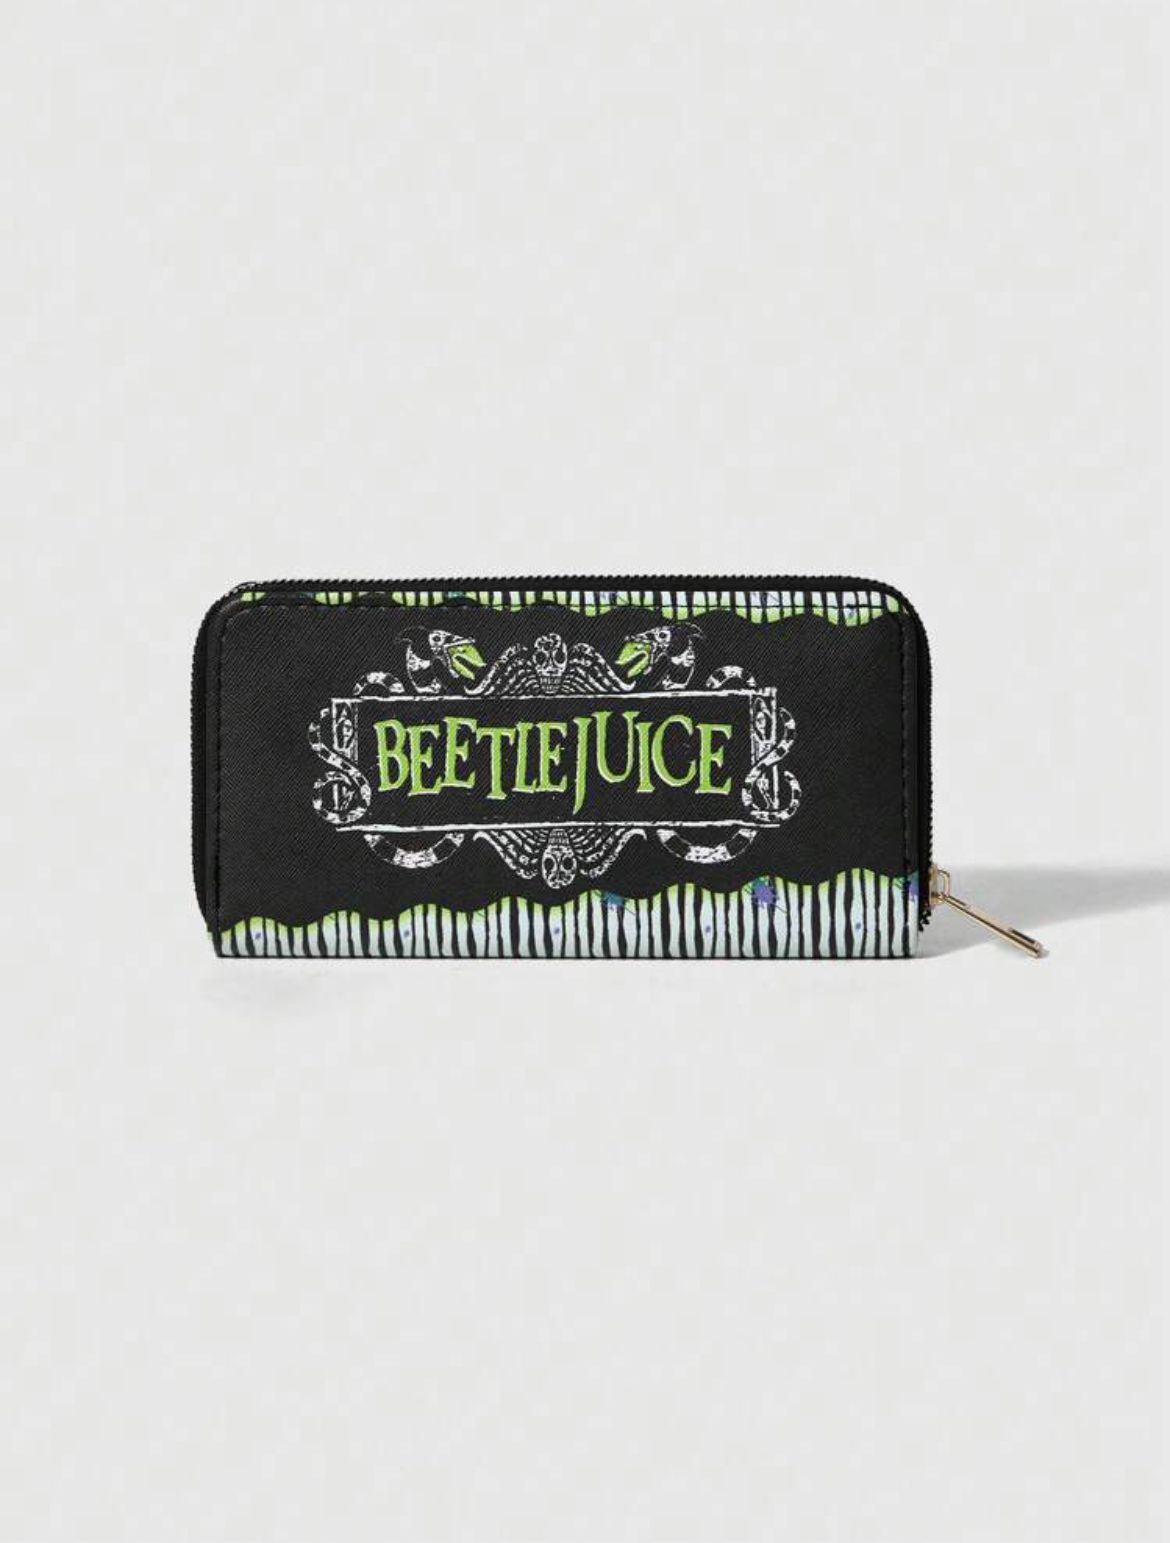 Beetlejuice Wallet